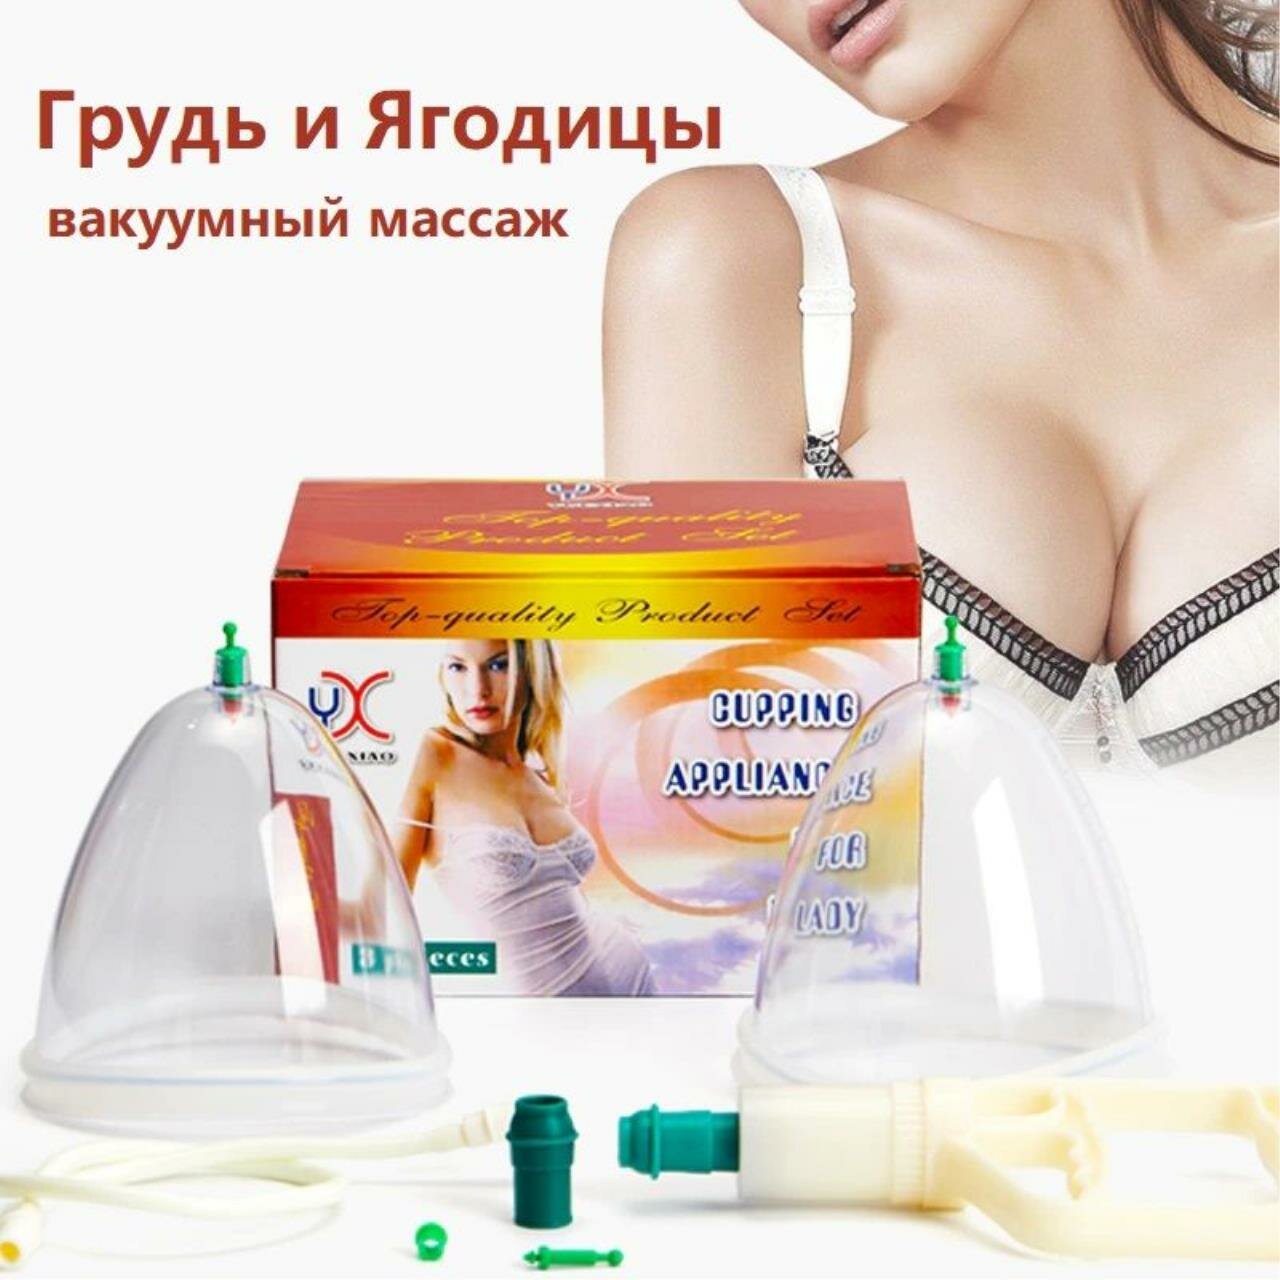 Женские массажные вакуумные банки для груди и ягодиц с насосом в комплекте, диаметр 13 см, 2 шт